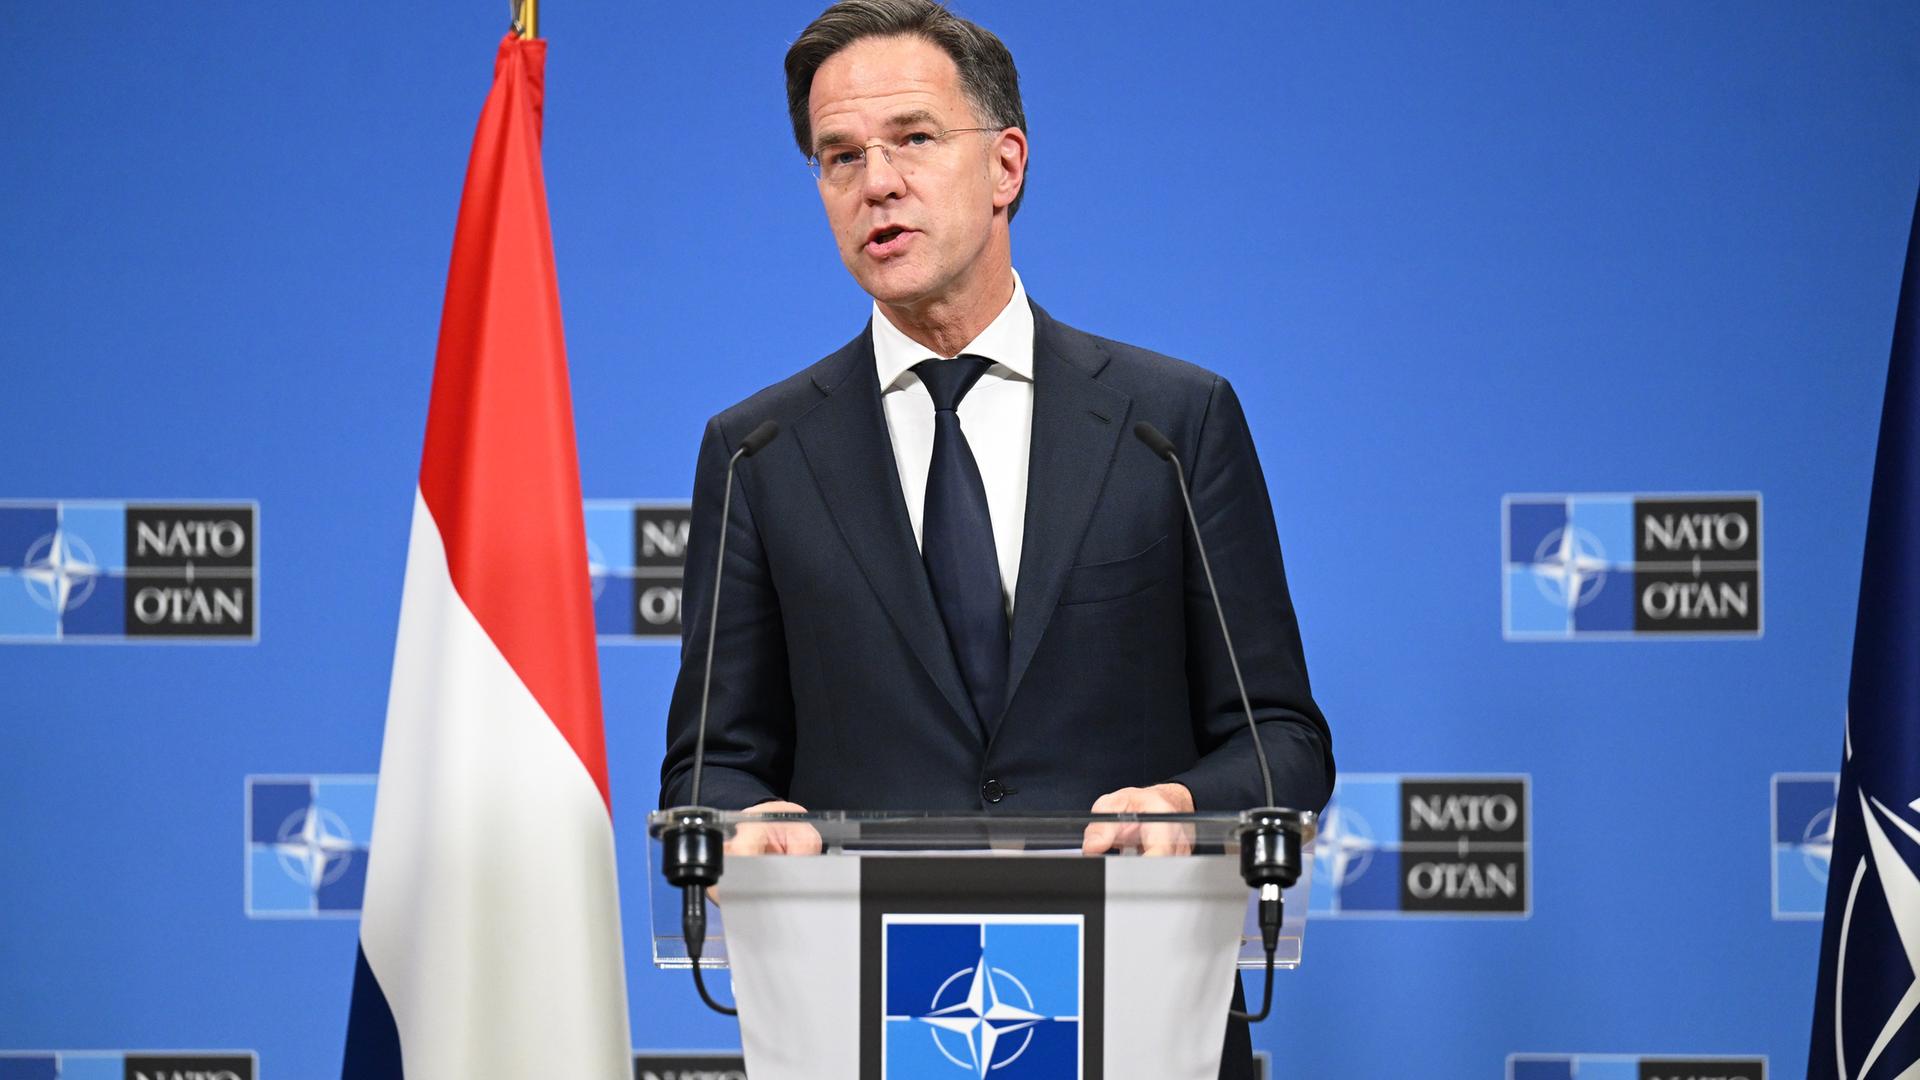 Marc Rutte an einem Rednerpult vor einer Wand mit dem NATO-Logo, neben sich eine niederländische Flagge